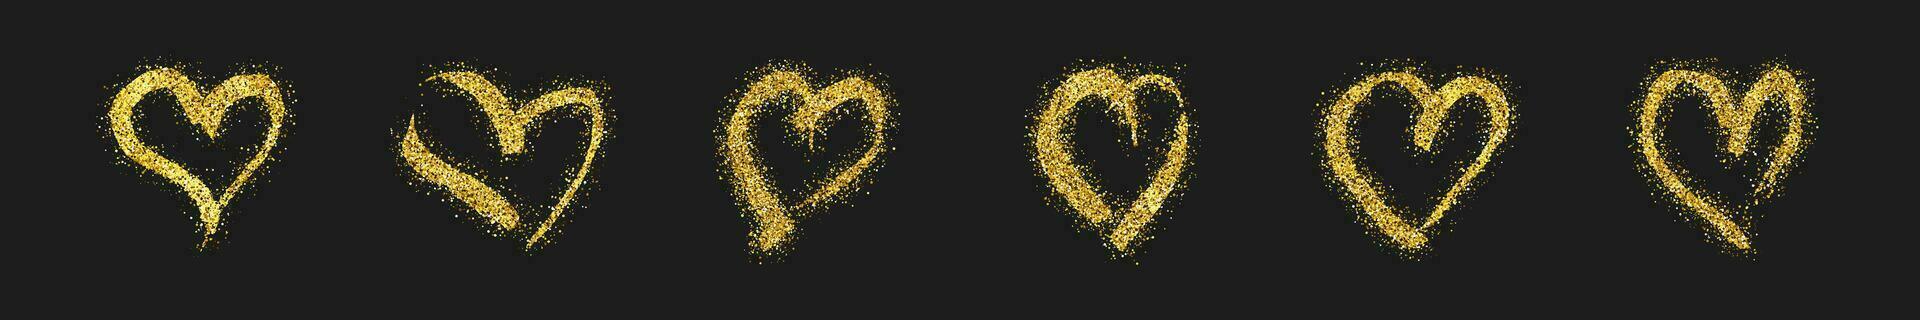 conjunto do seis ouro brilhar rabisco corações em Sombrio fundo. ouro grunge mão desenhado coração. romântico amor símbolo. vetor ilustração.